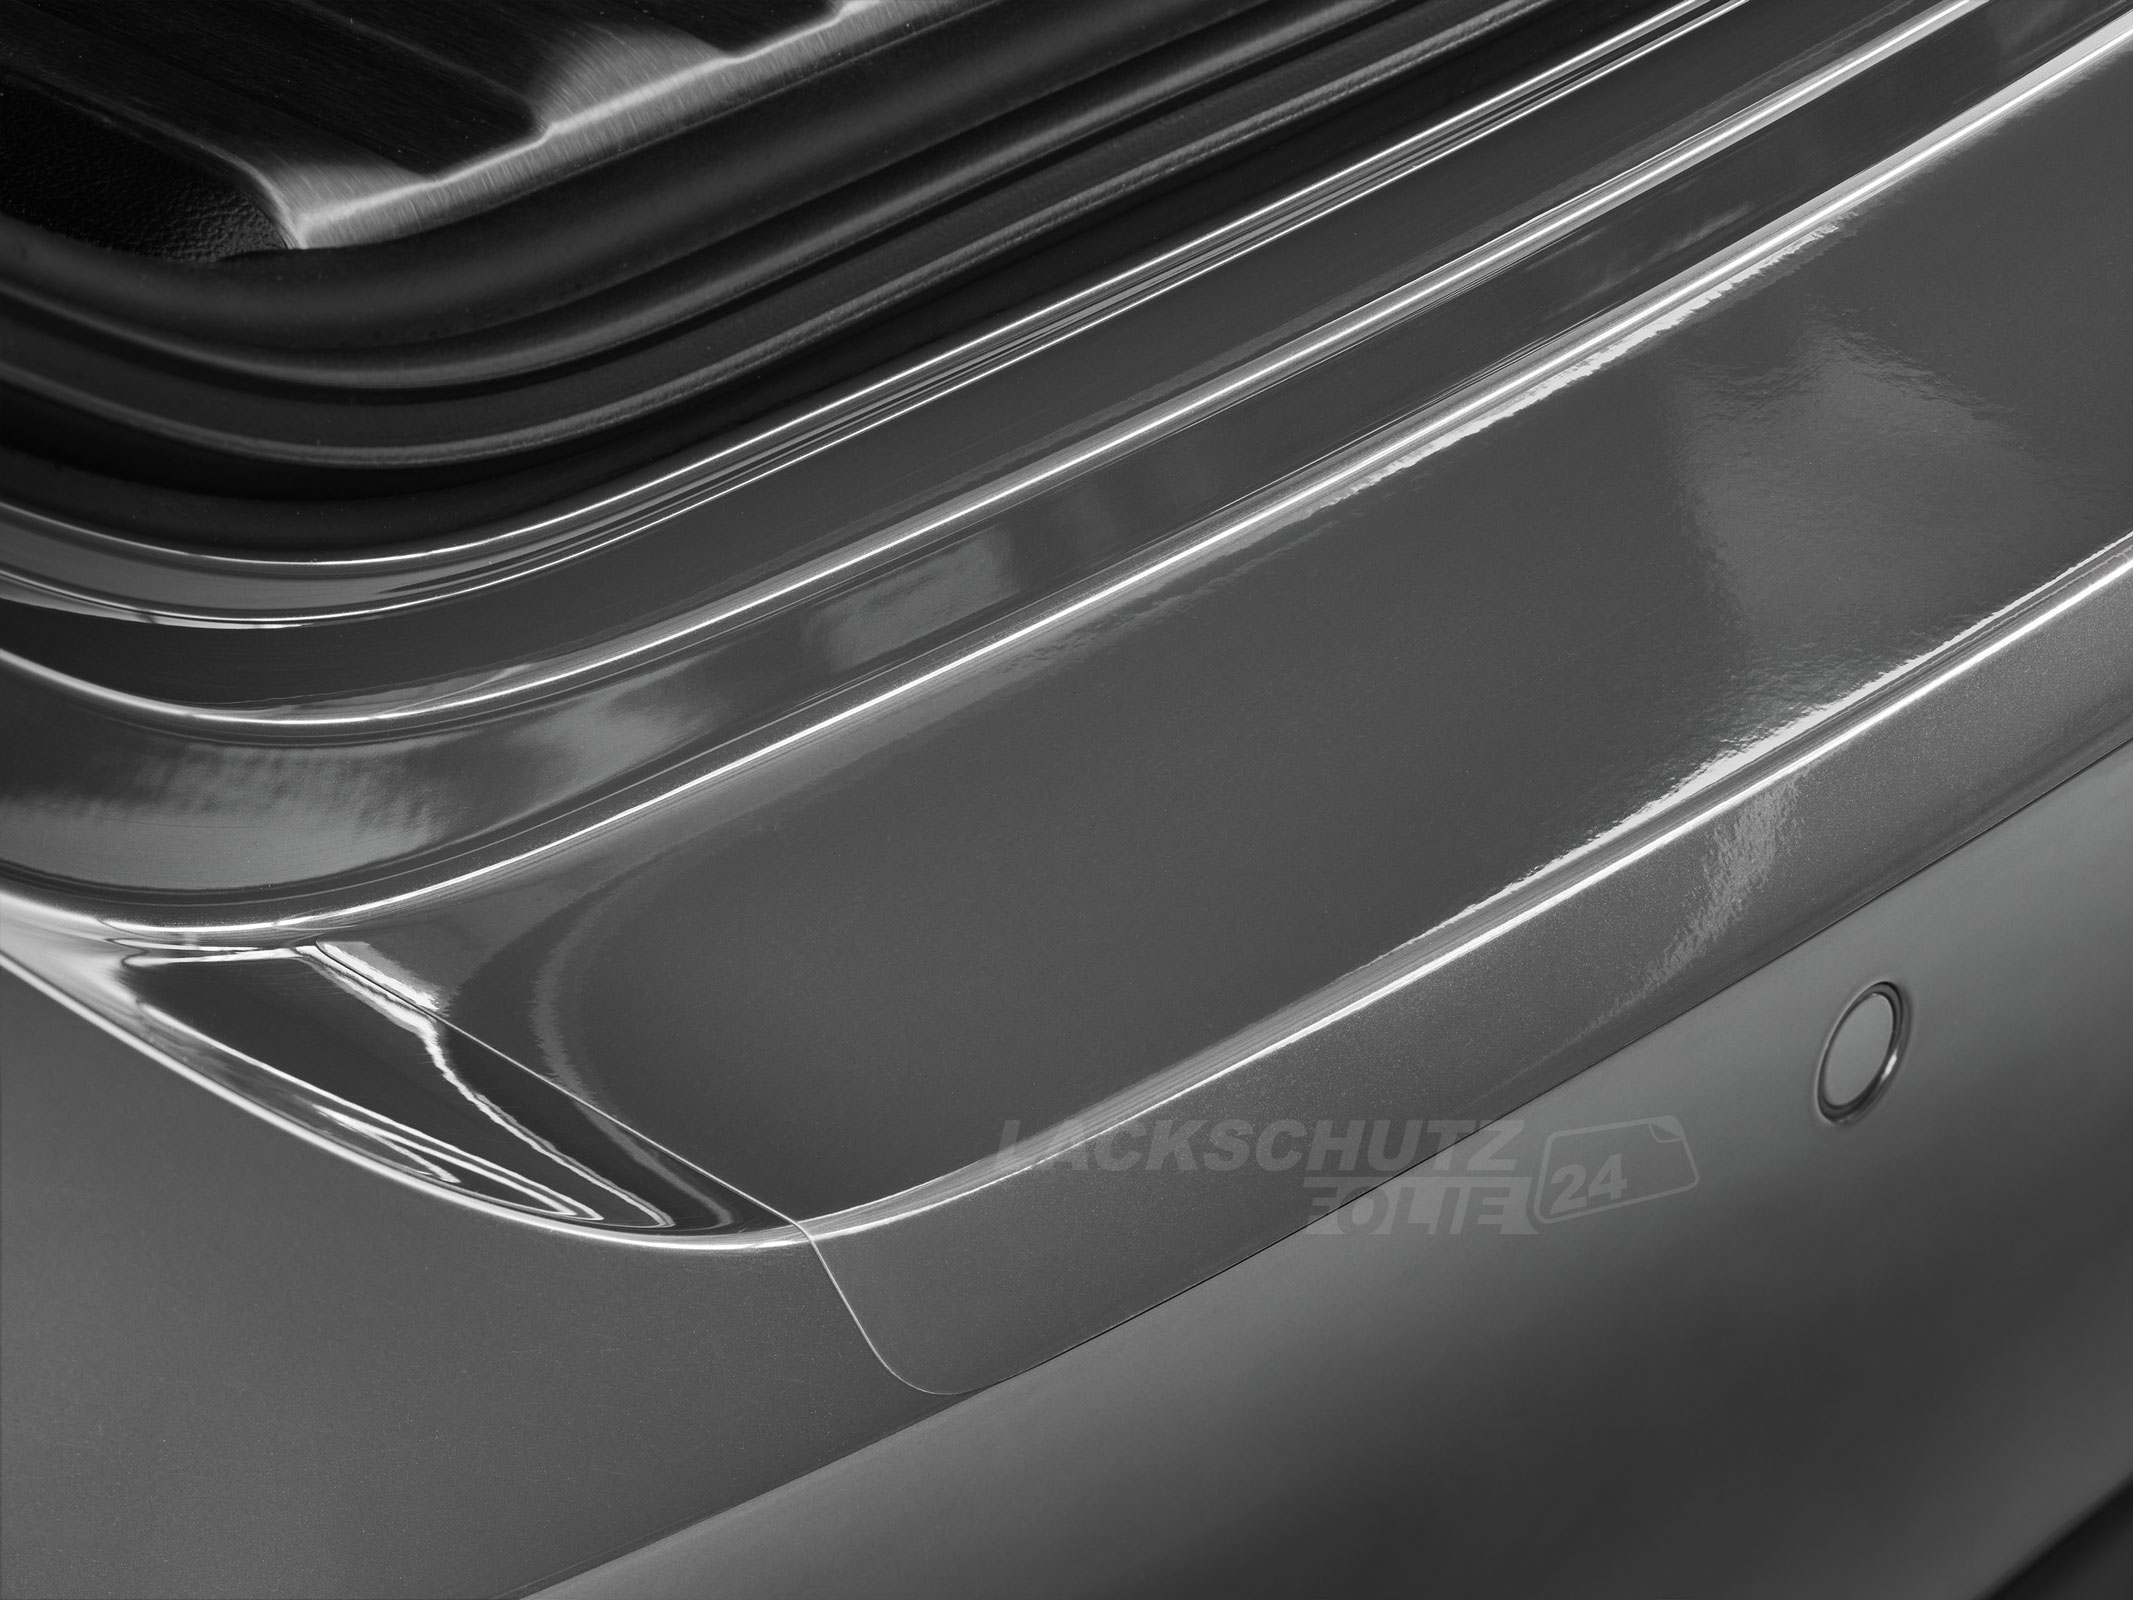 Ladekantenschutzfolie - Transparent Glatt Hochglänzend für VW / Volkswagen Touran CROSS (I) Typ 1T/GP2, BJ 2011-2015